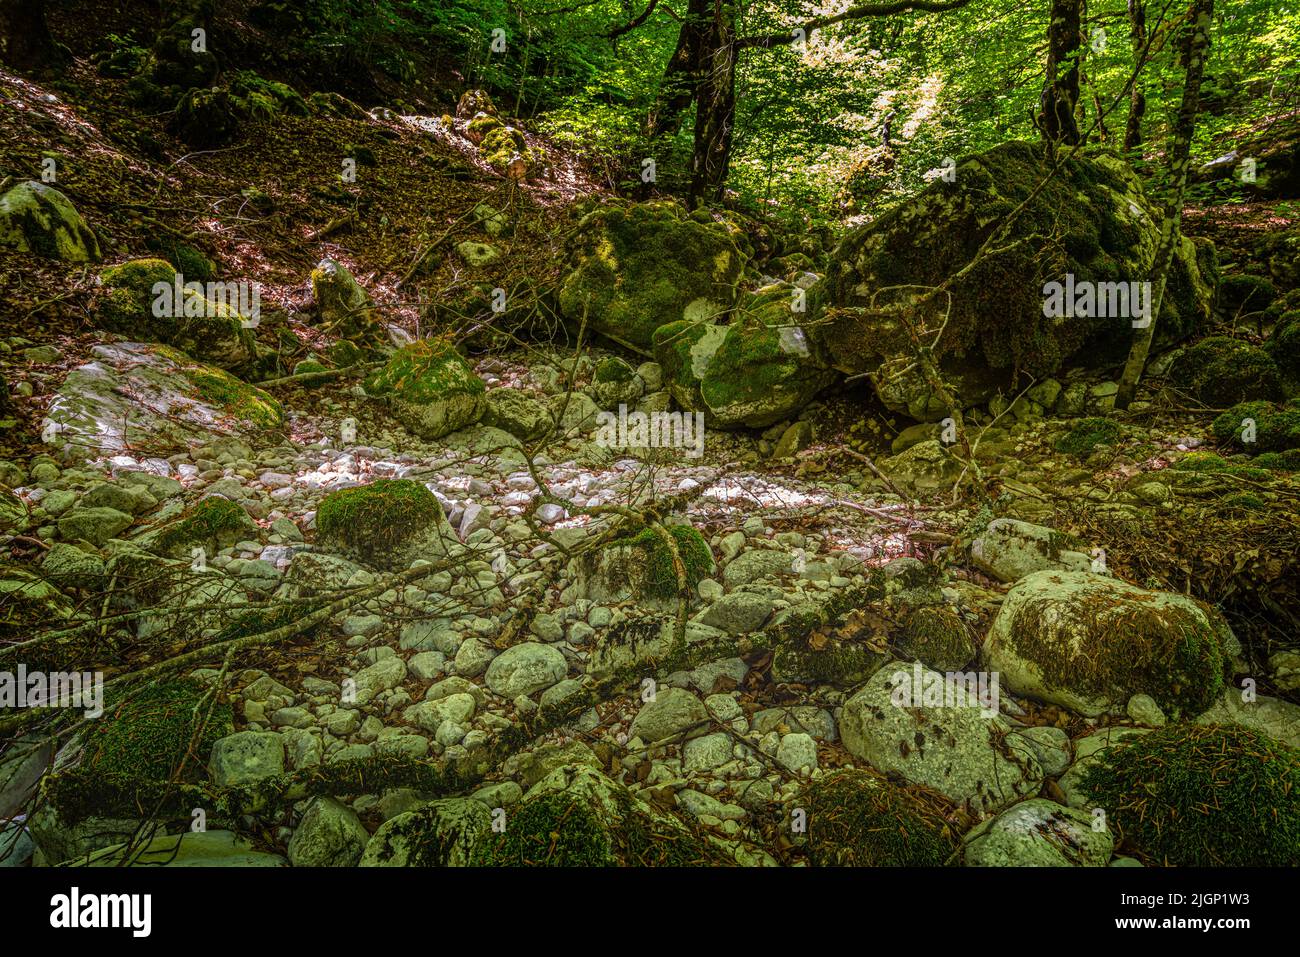 El lecho de un arroyo de montaña ahora seco debido a la sequía. Abruzos, Parque Nacional de Abruzos Lazio y Molise, Italia, Europa Foto de stock